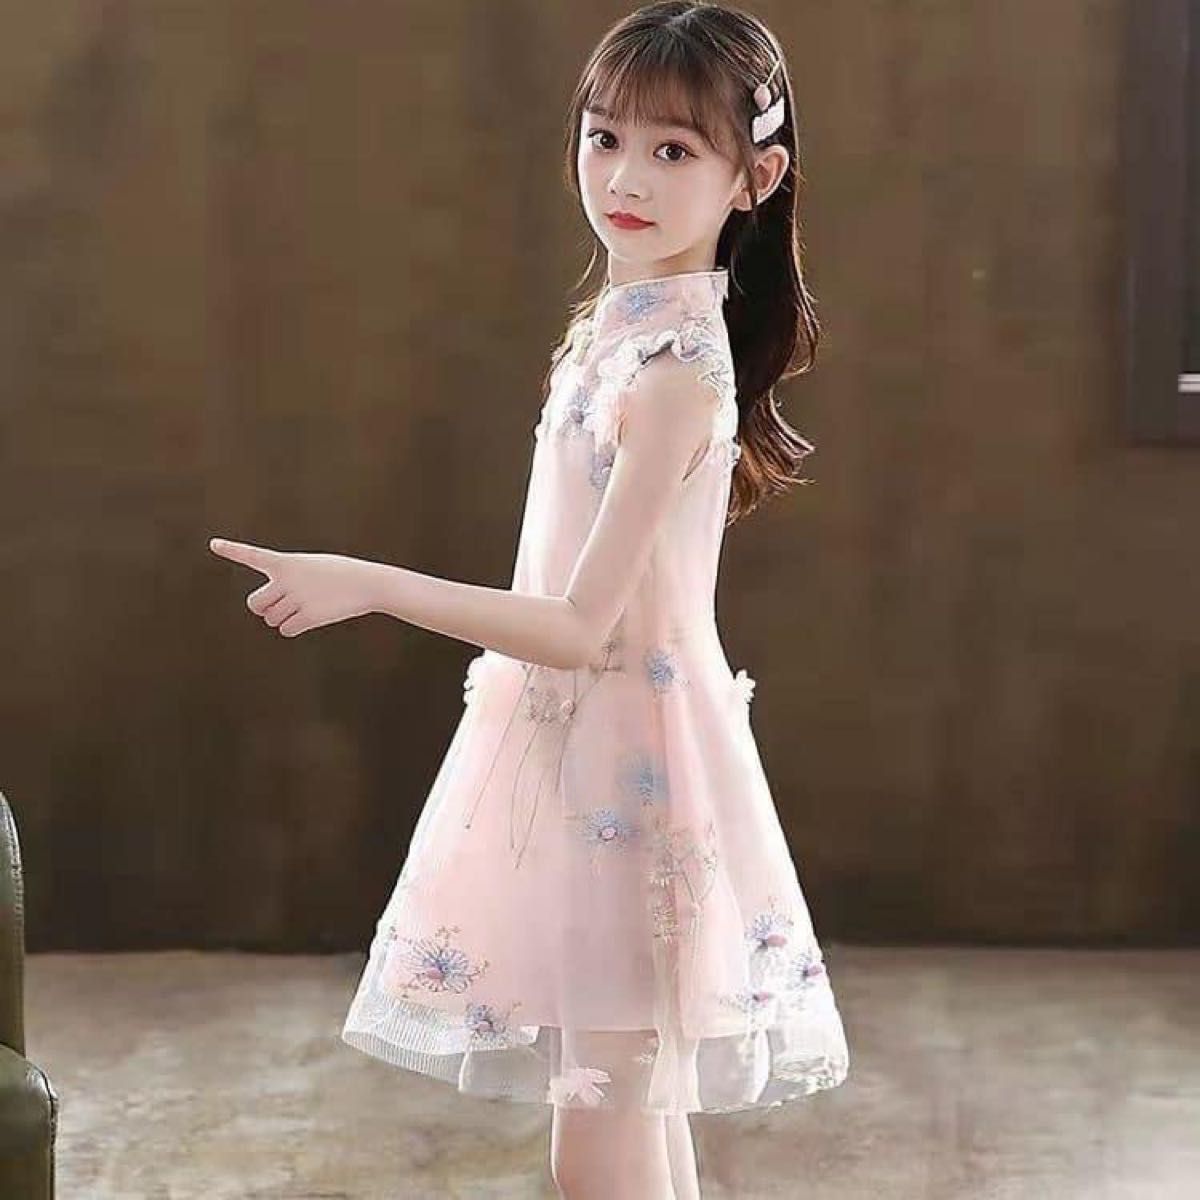 女の子 チャイナ風 ワンピース チャイナ風ドレス ピンク お花 刺繍 パーティードレス 可愛い 綺麗 涼しい 150